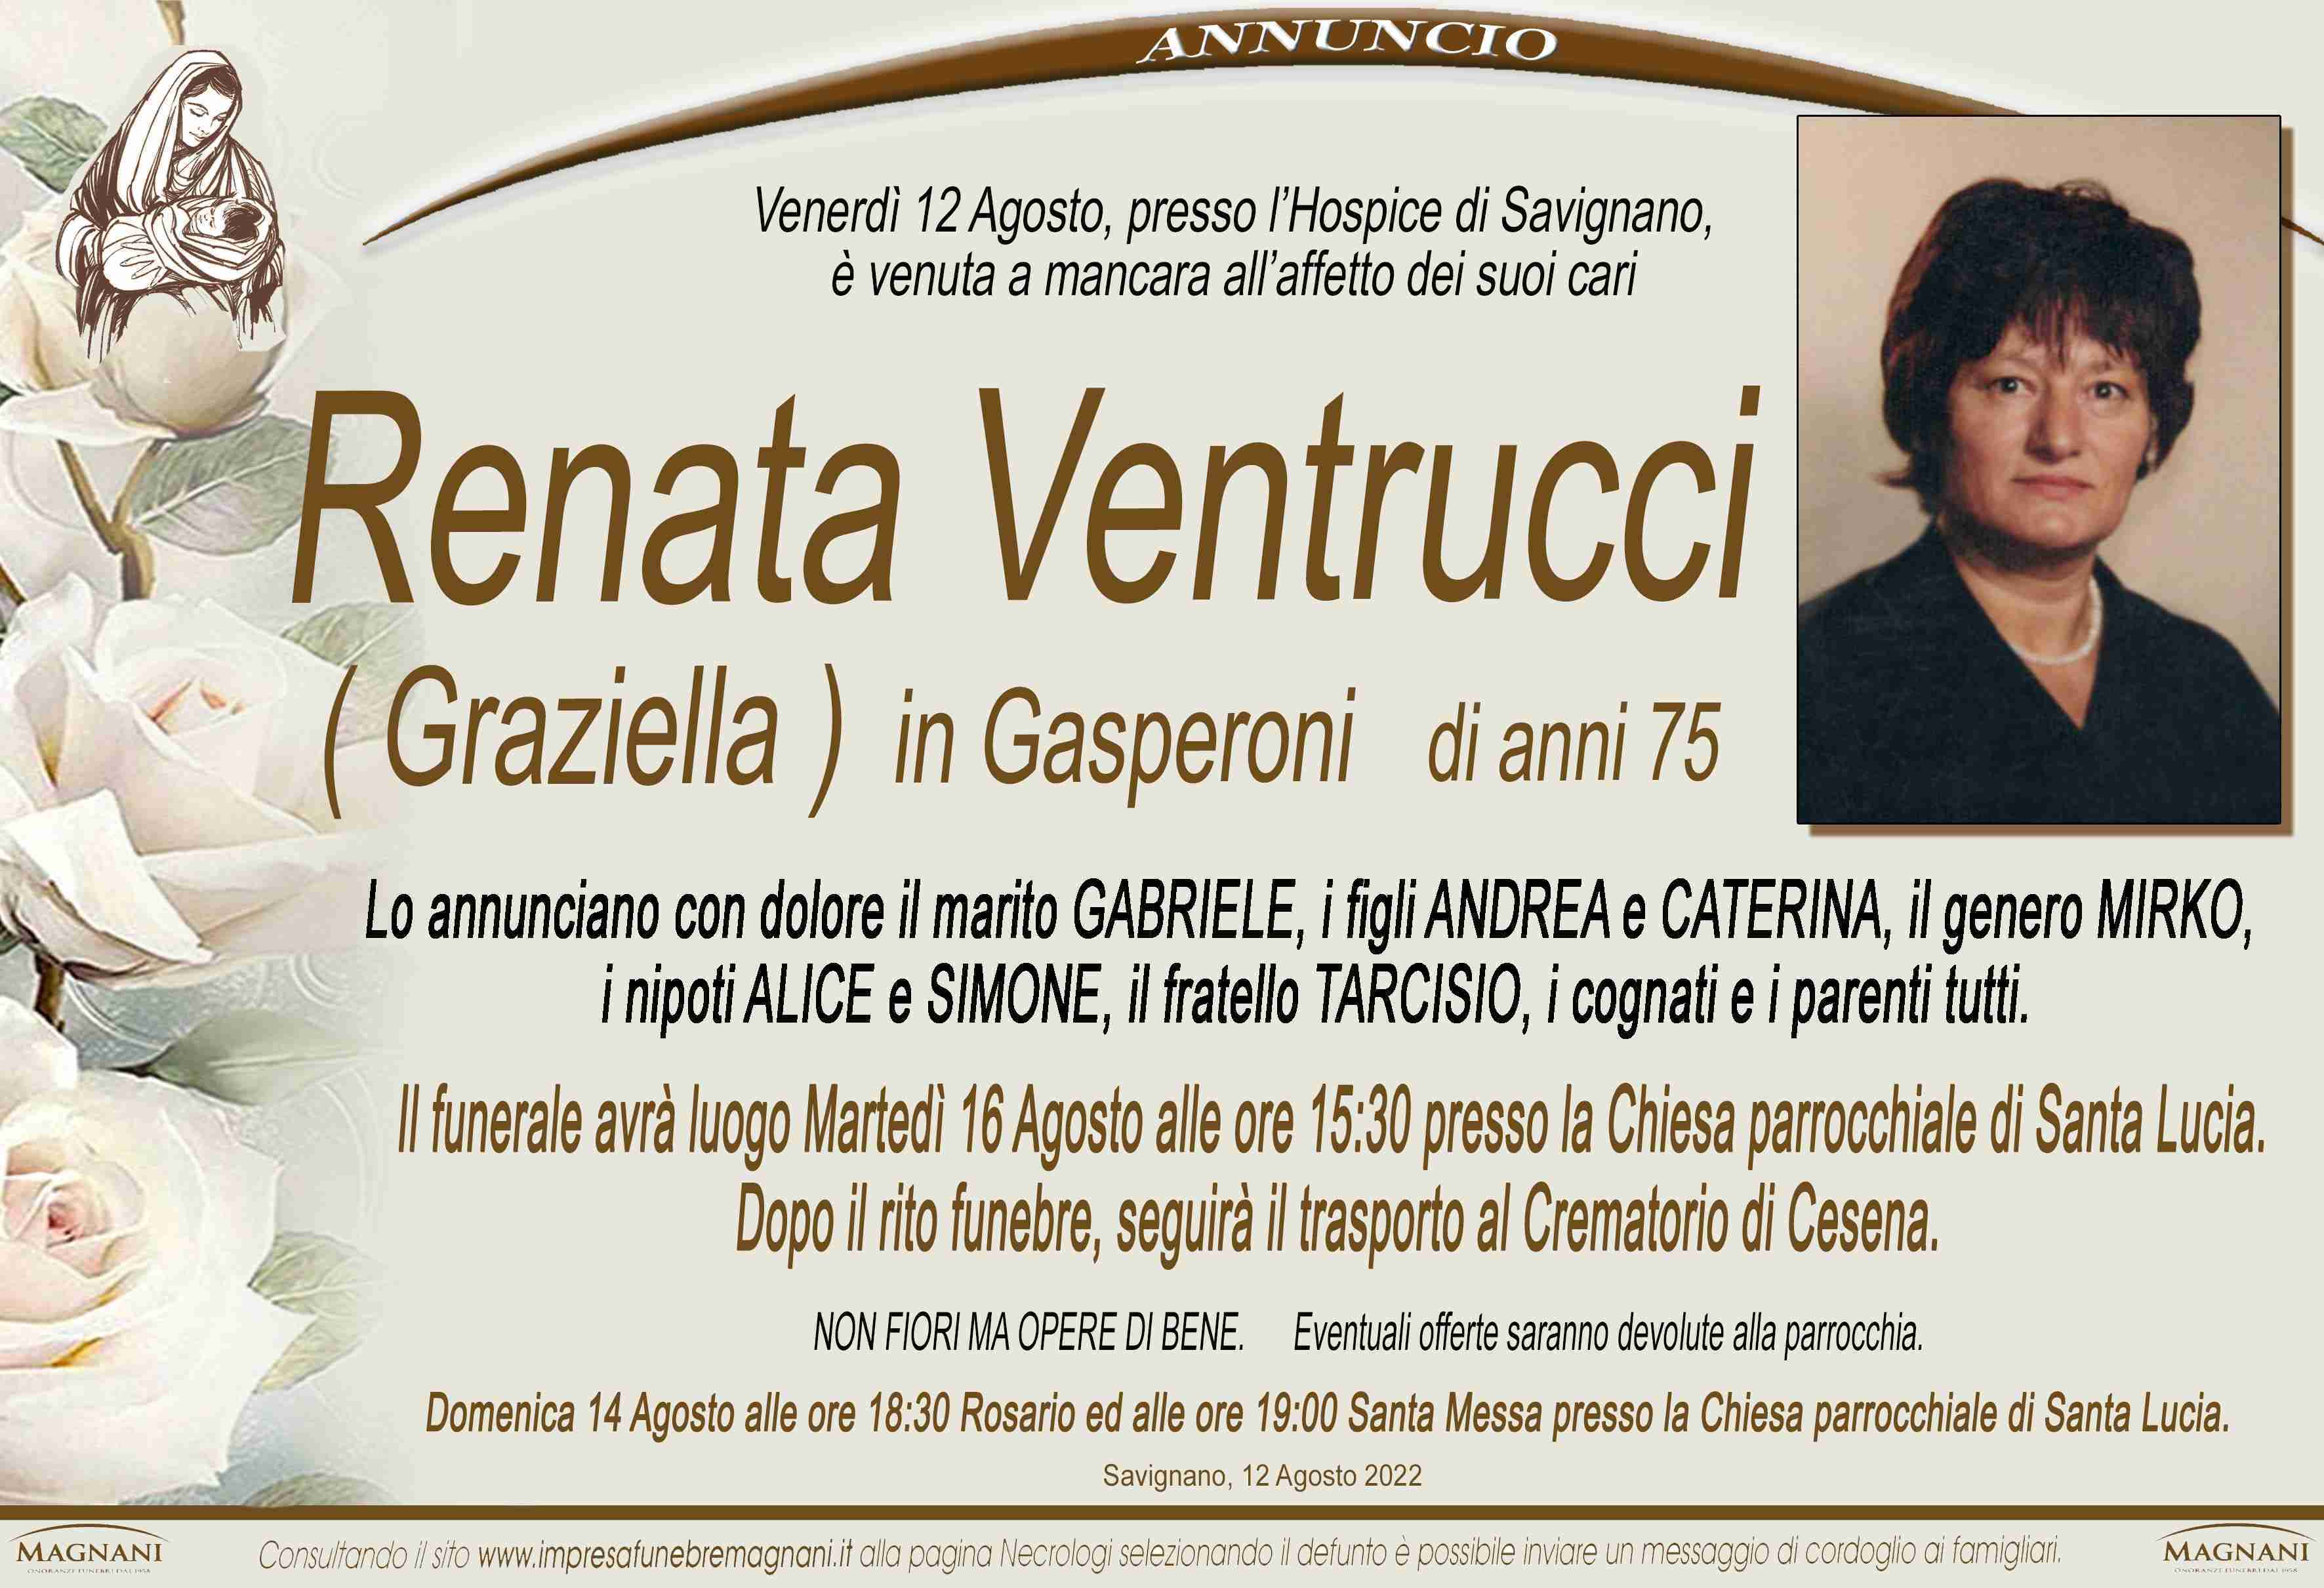 Renata Ventrucci